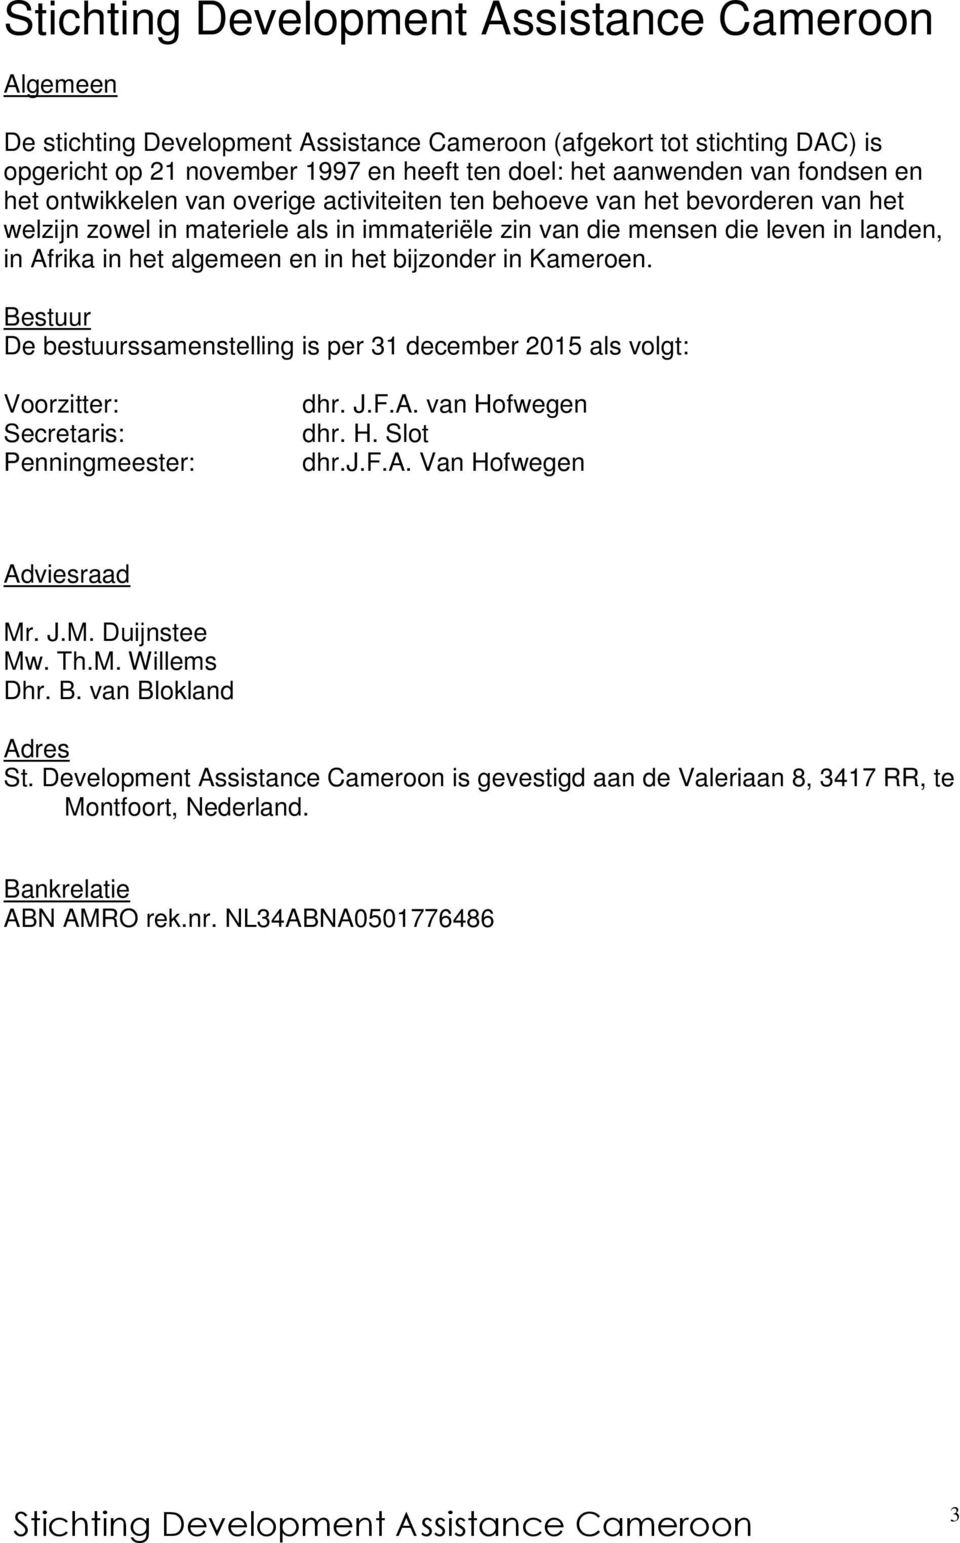 Bestuur De bestuurssamenstelling is per 31 december 2015 als volgt: Voorzitter: Secretaris: Penningmeester: dhr. J.F.A. van Hofwegen dhr. H. Slot dhr.j.f.a. Van Hofwegen Adviesraad Mr. J.M. Duijnstee Mw.